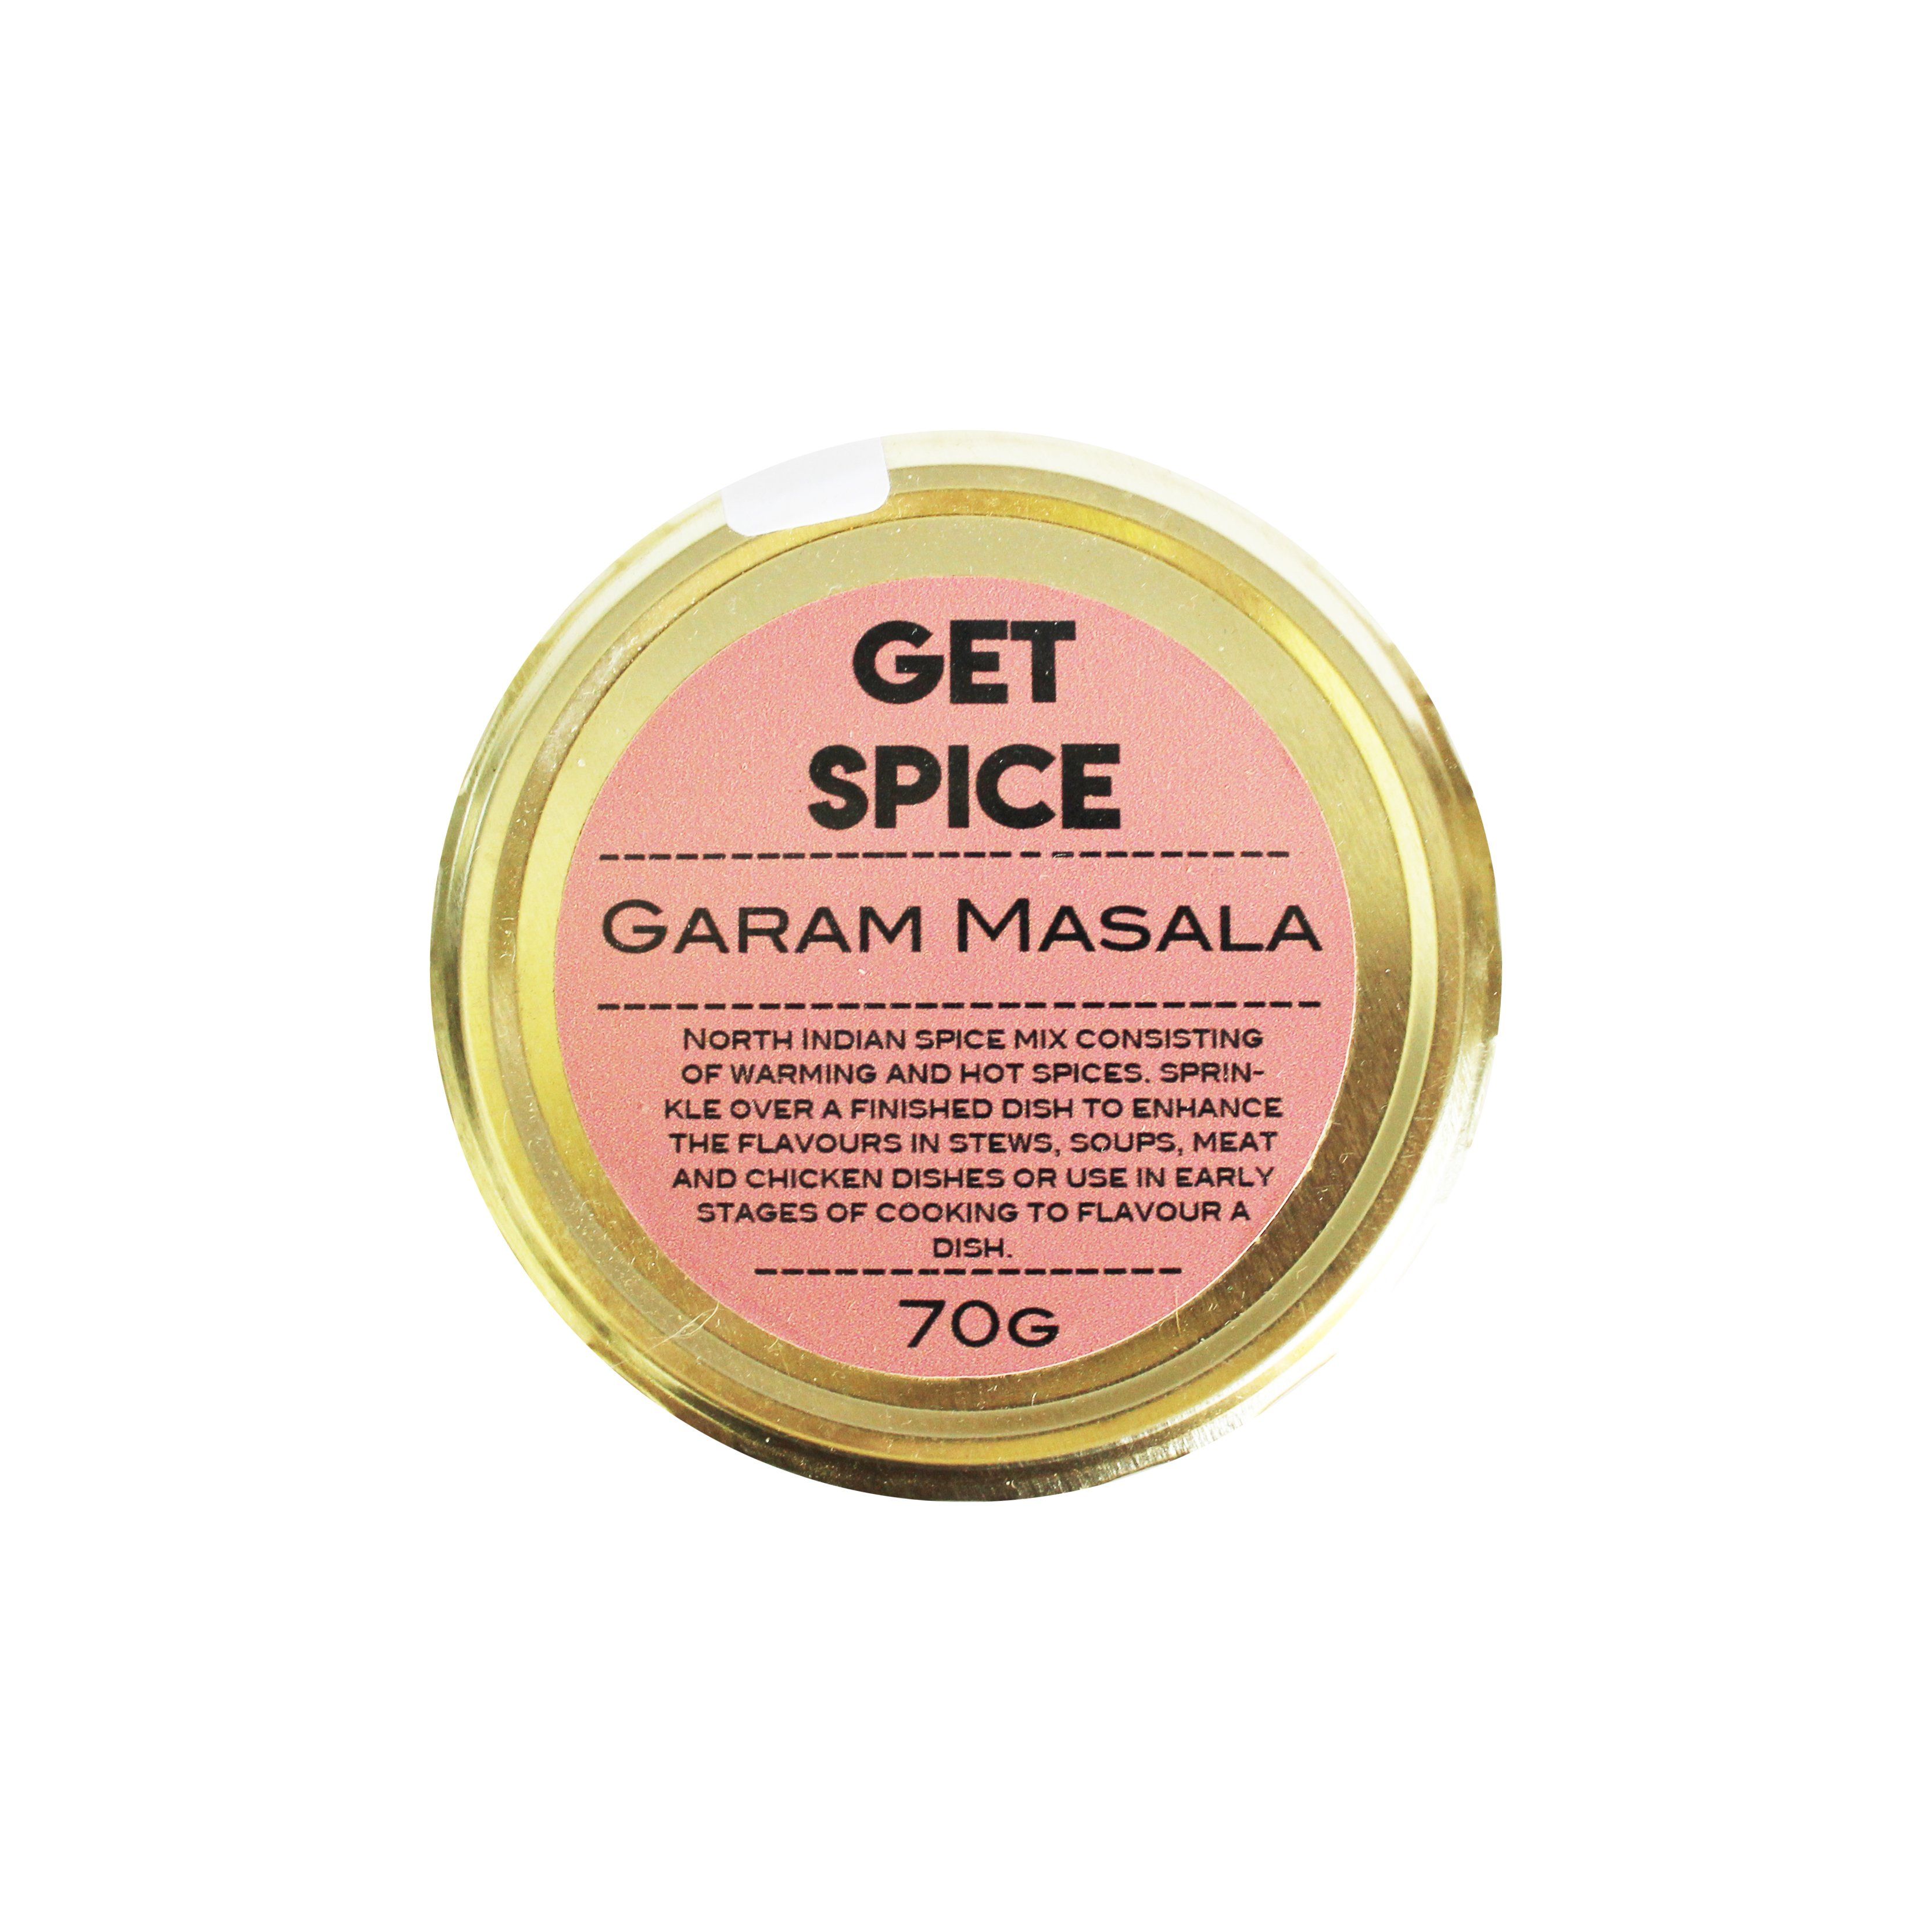 Get Spice Garam Masala 70g Salts, Herbs & Spices Get Spice 